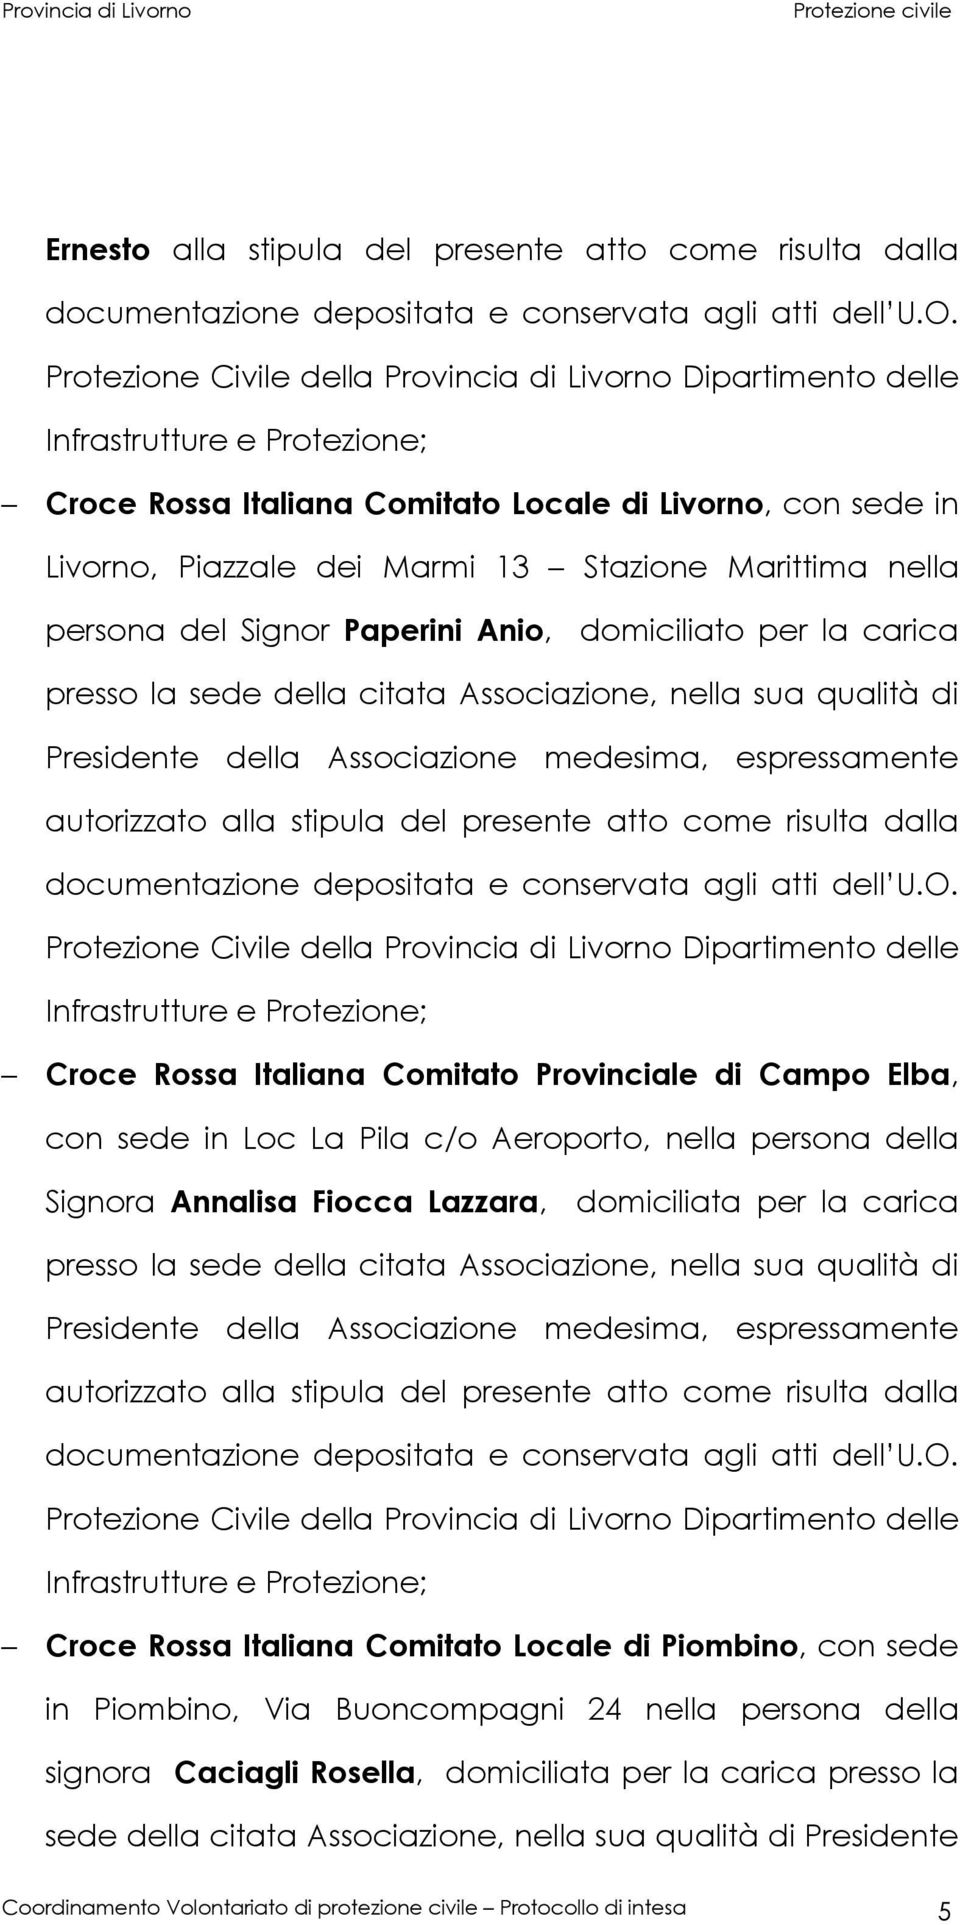 presente atto come risulta dalla Infrastrutture e Croce Rossa Italiana Comitato Provinciale di Campo Elba, con sede in Loc La Pila c/o Aeroporto, nella persona della Signora Annalisa Fiocca Lazzara,